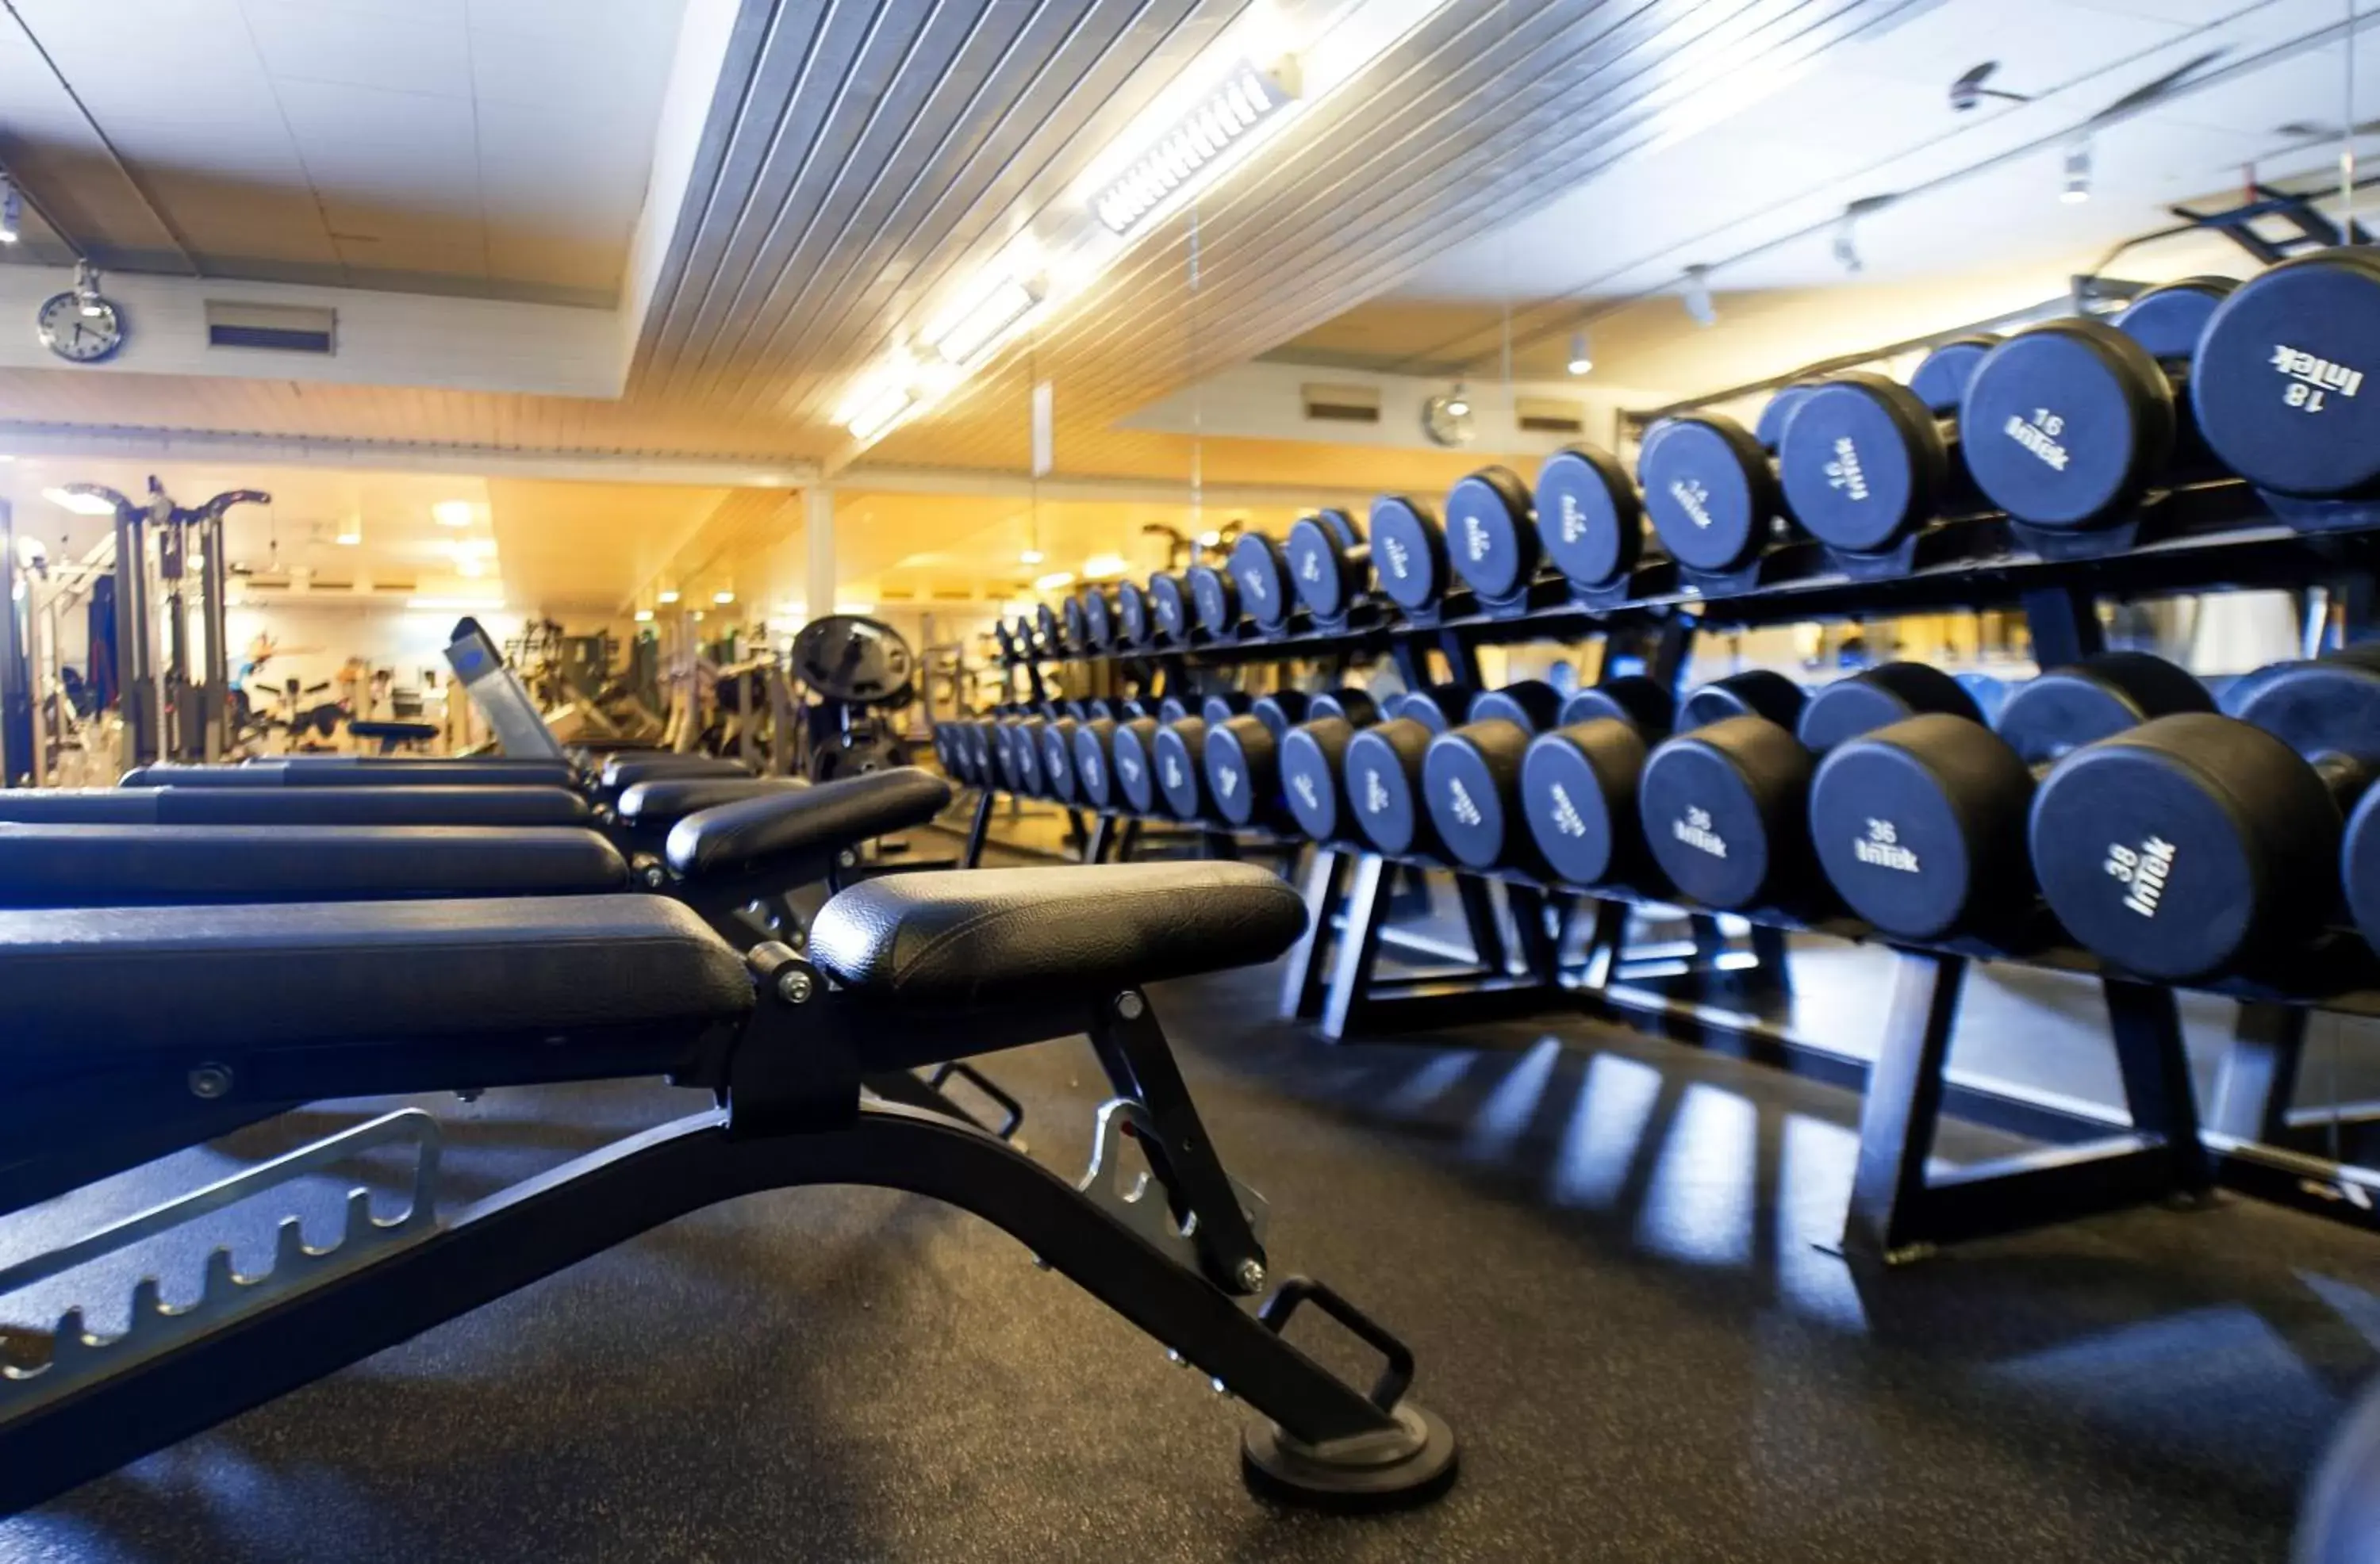 Fitness centre/facilities, Fitness Center/Facilities in Good Morning+ Hägersten